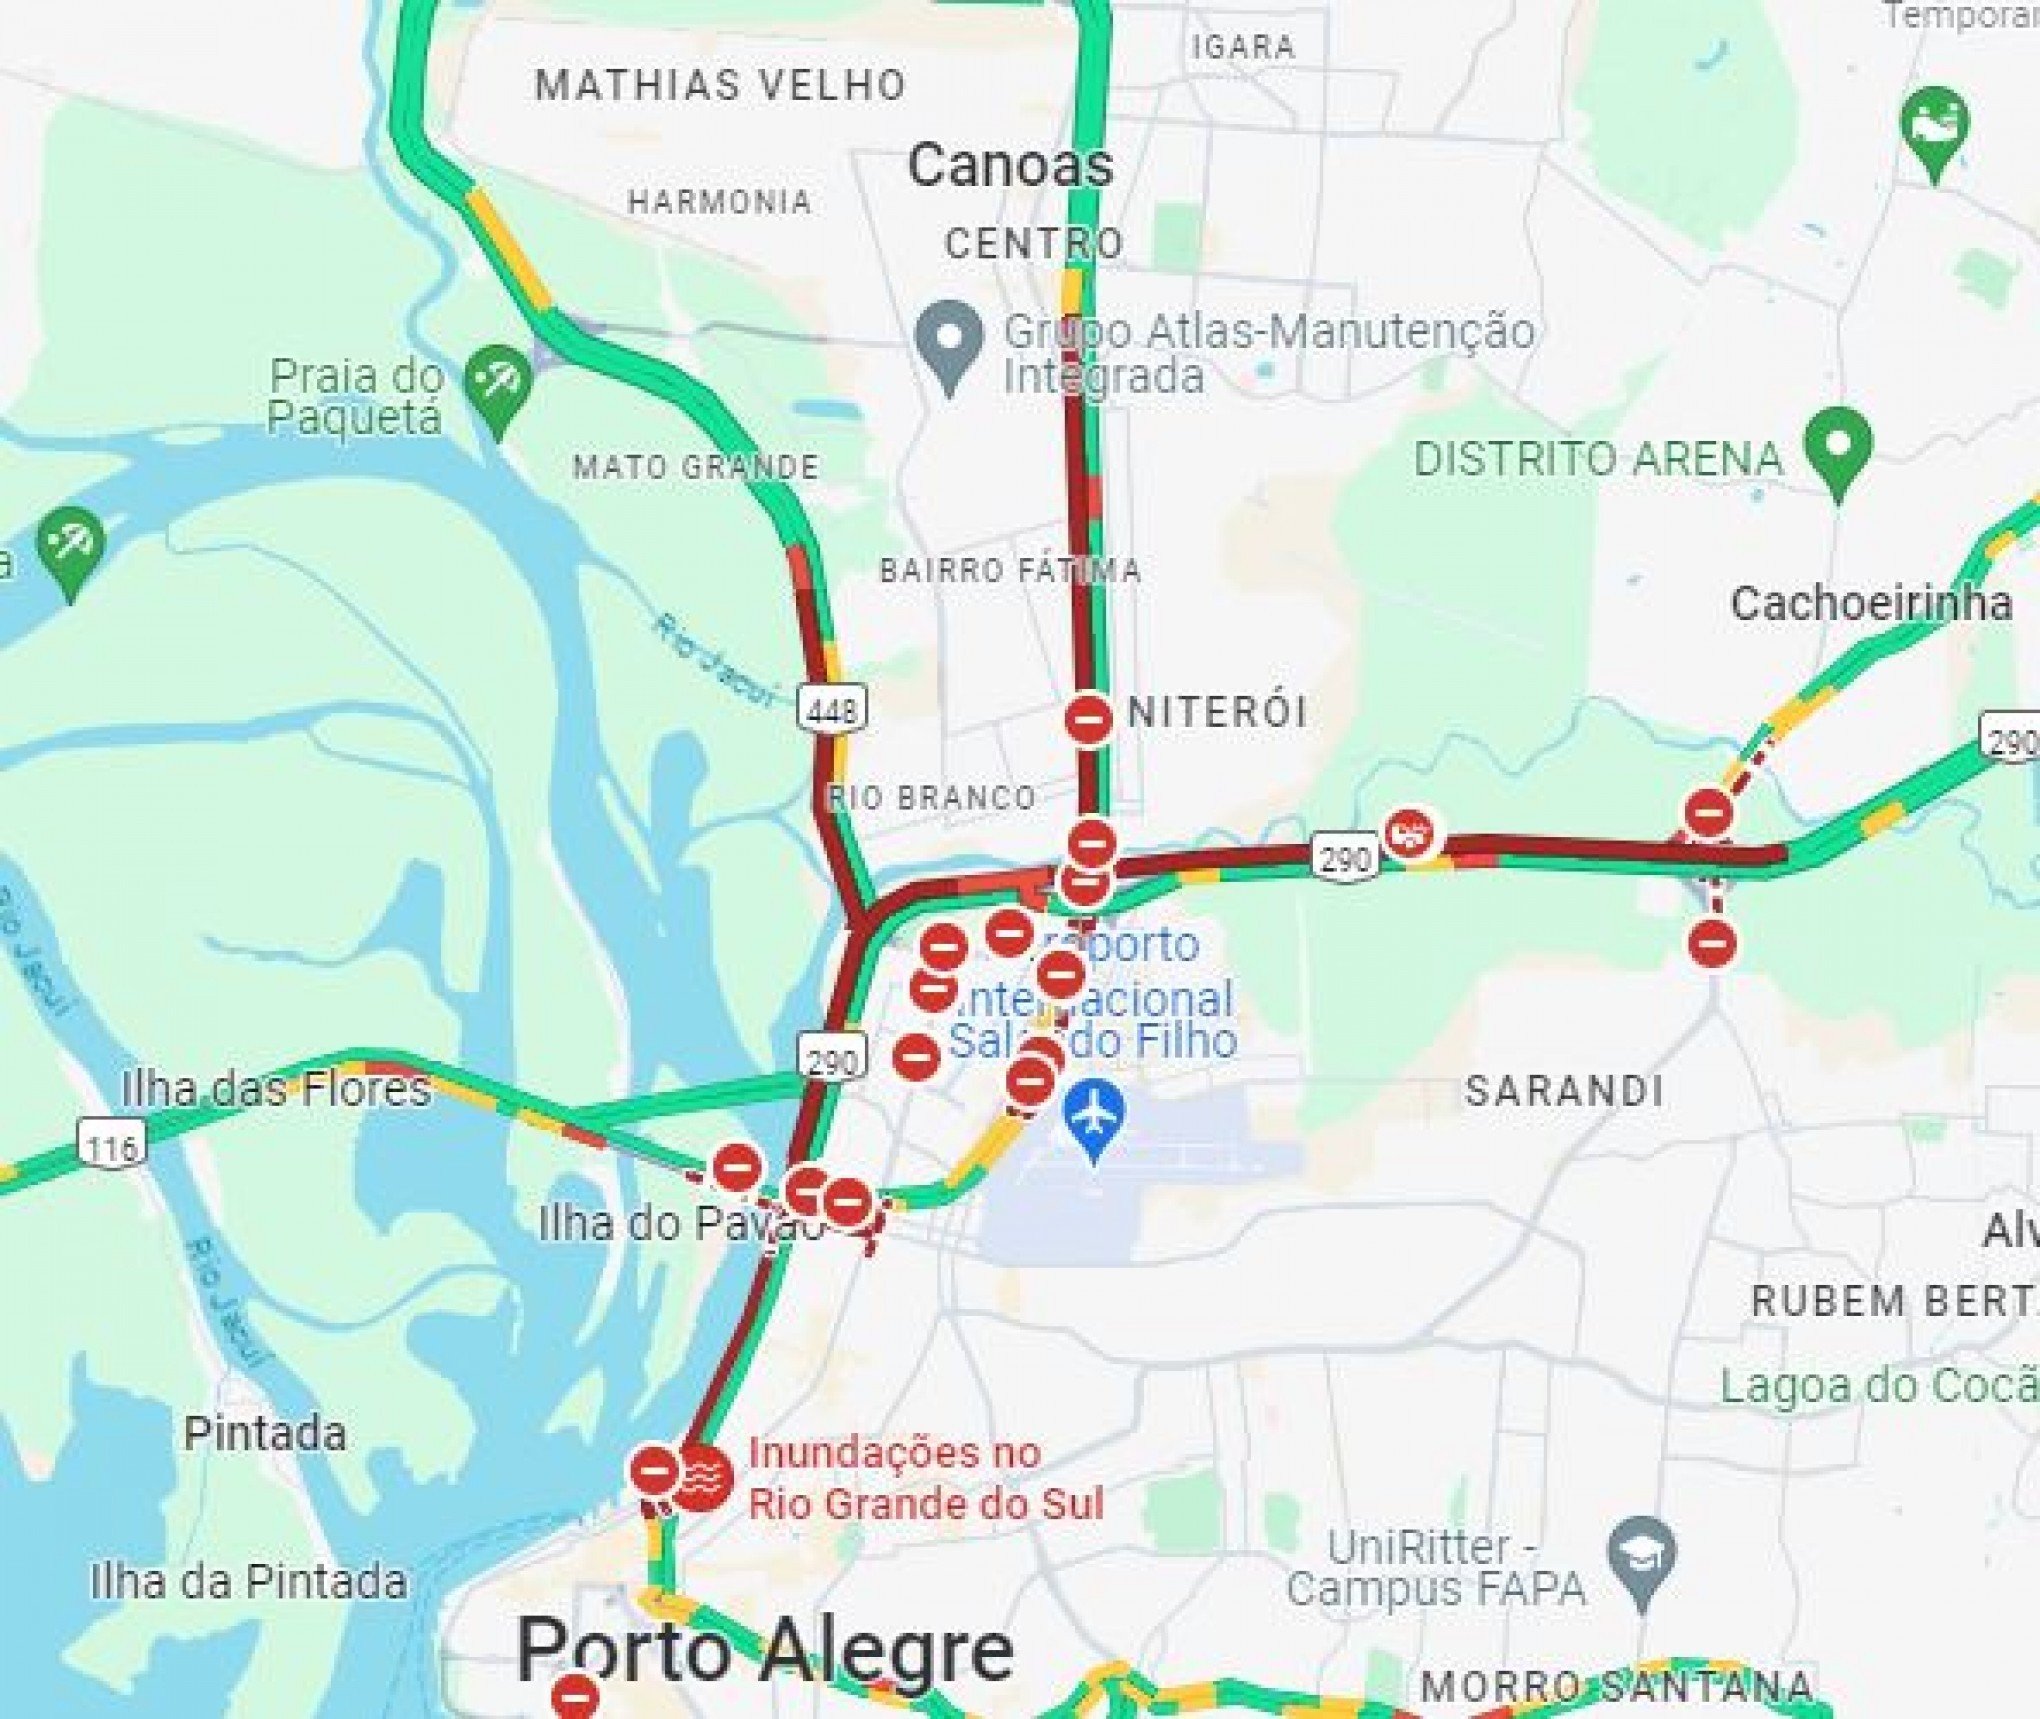 TRÂNSITO: Acesso a Porto Alegre tem congestionamento a partir de Canoas e Cachoeirinha; confira rota alternativa